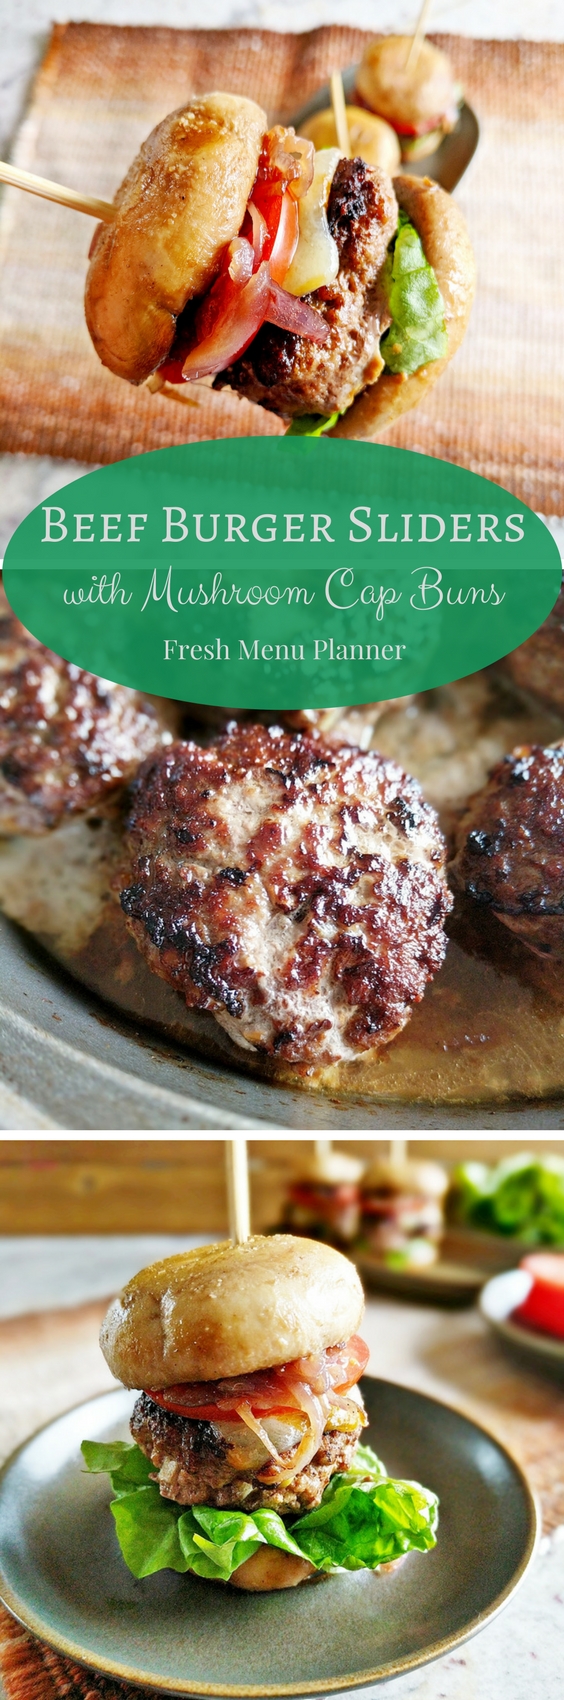 Best Hamburger Recipe with Mushroom Cap Buns